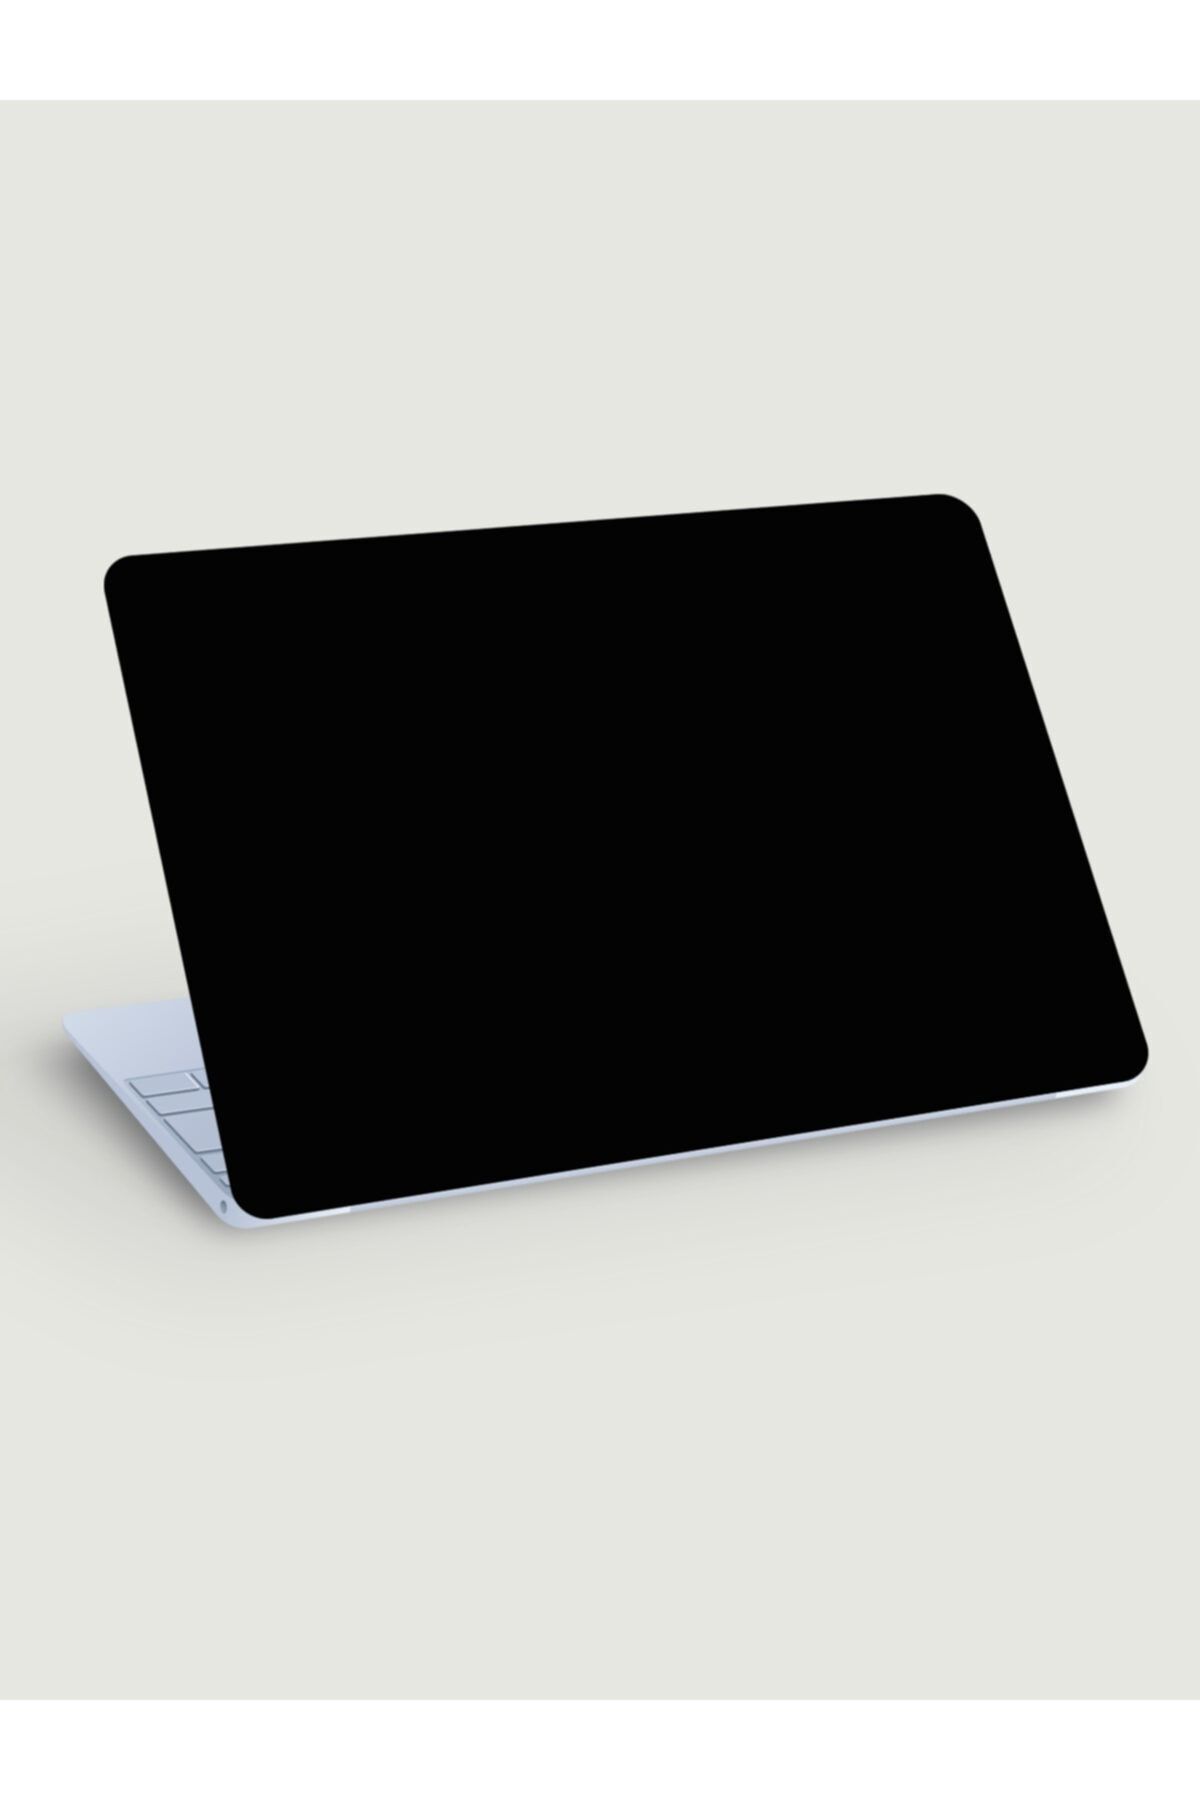 akcepazar Sade Parlak Siyah Dizüstü Bilgisayar Laptop Pc Macbook Üzerine Kaplama Için Sticker